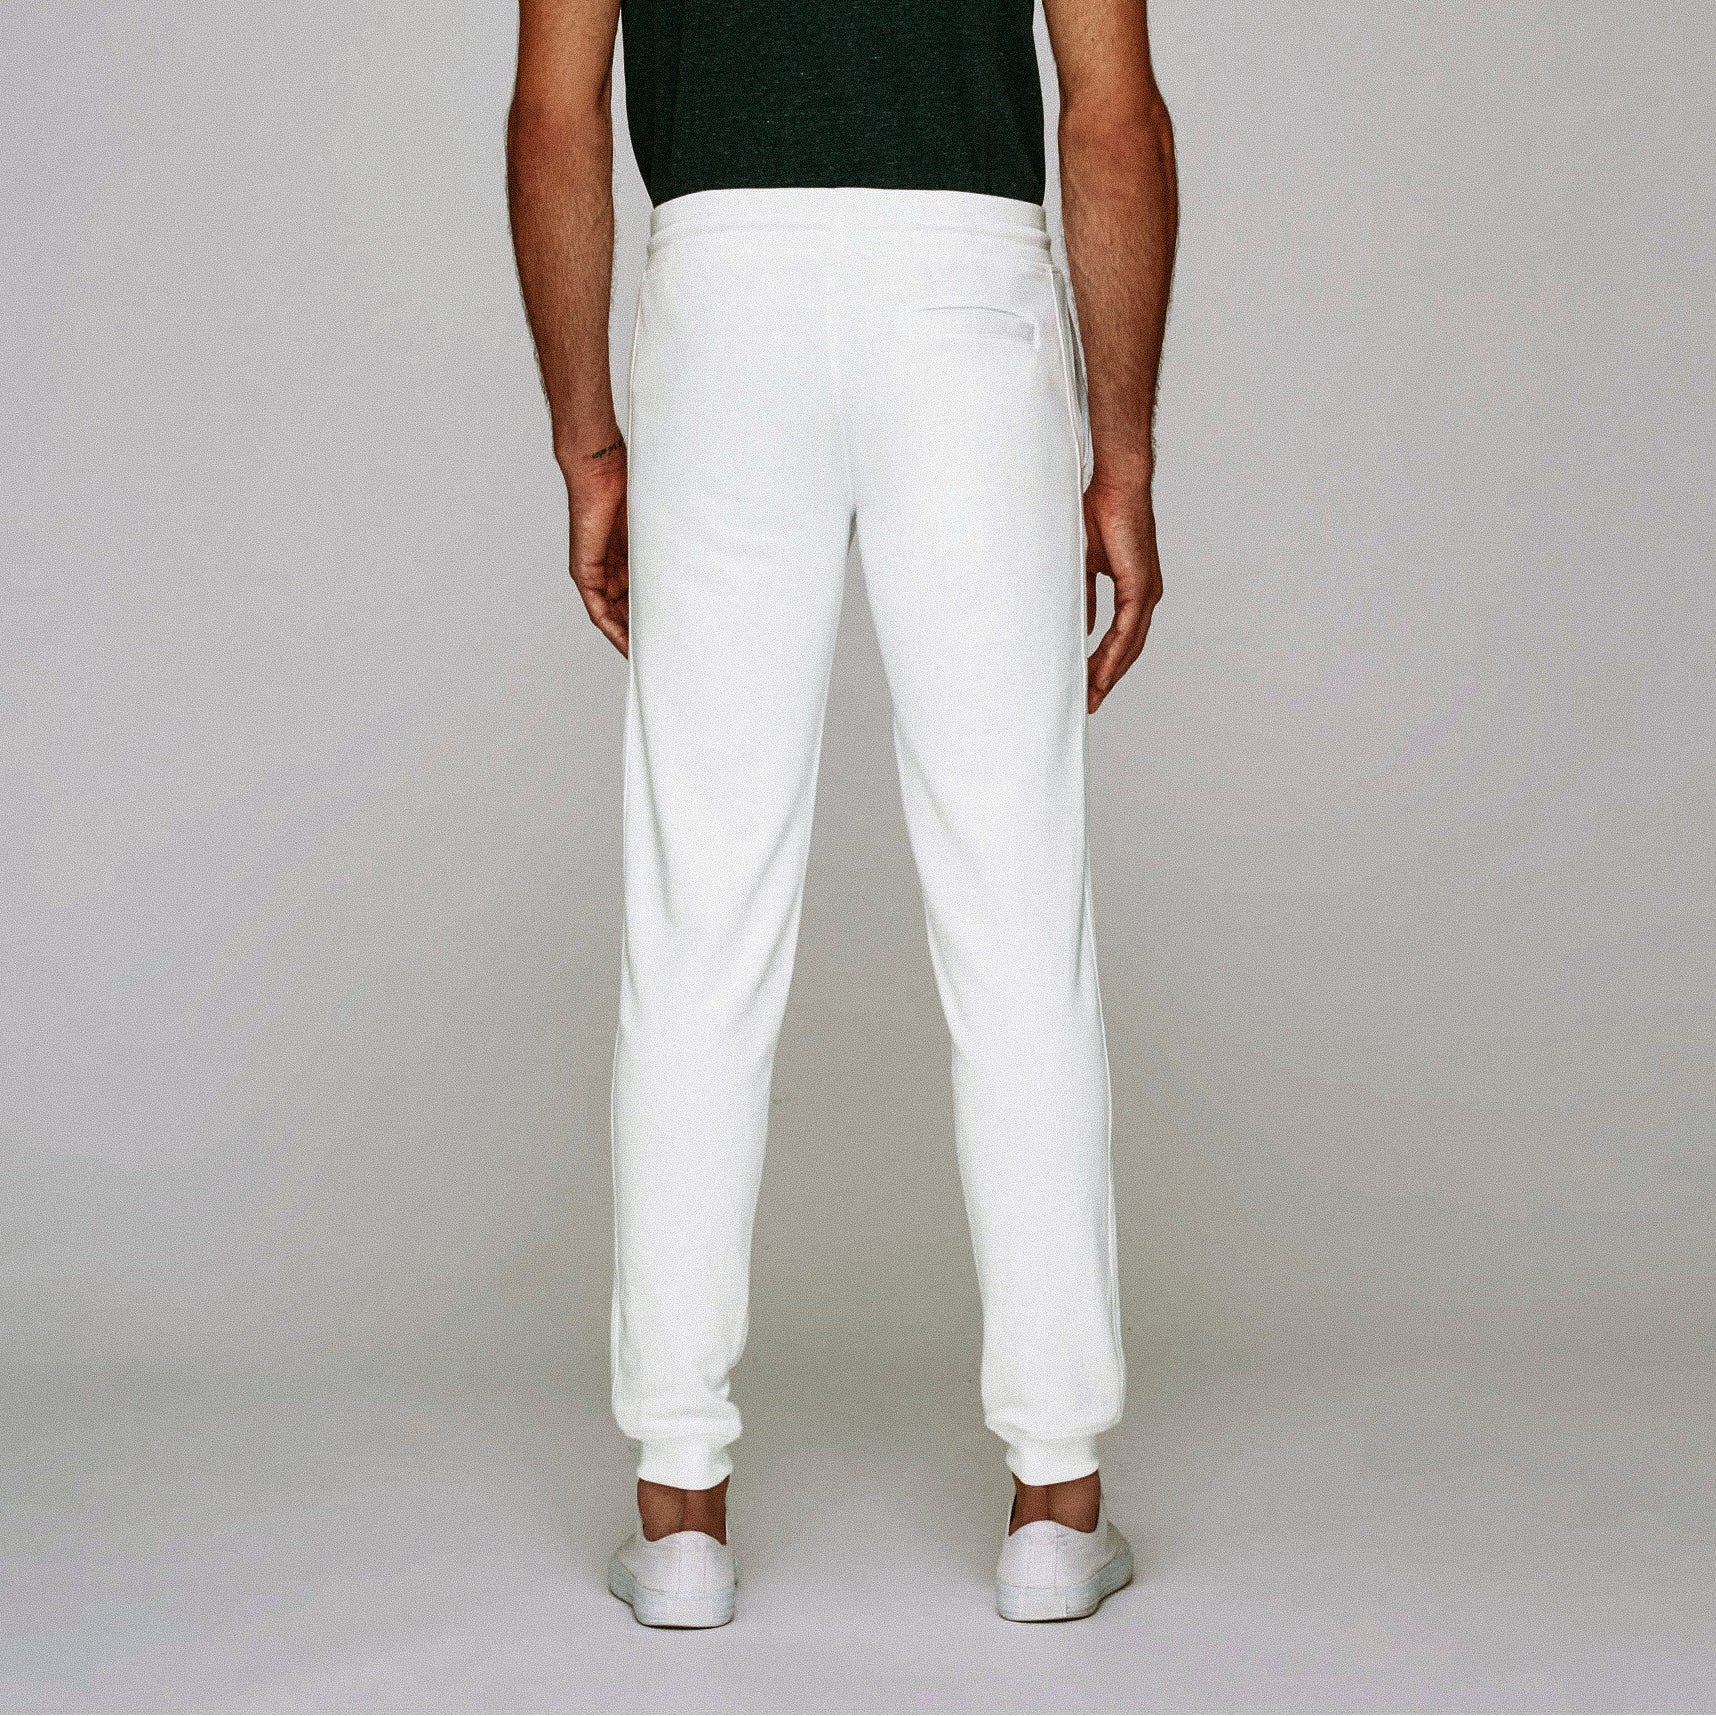 Pantalon sport 100% coton bio (300 g/m2) homme noir, TAILLE XL